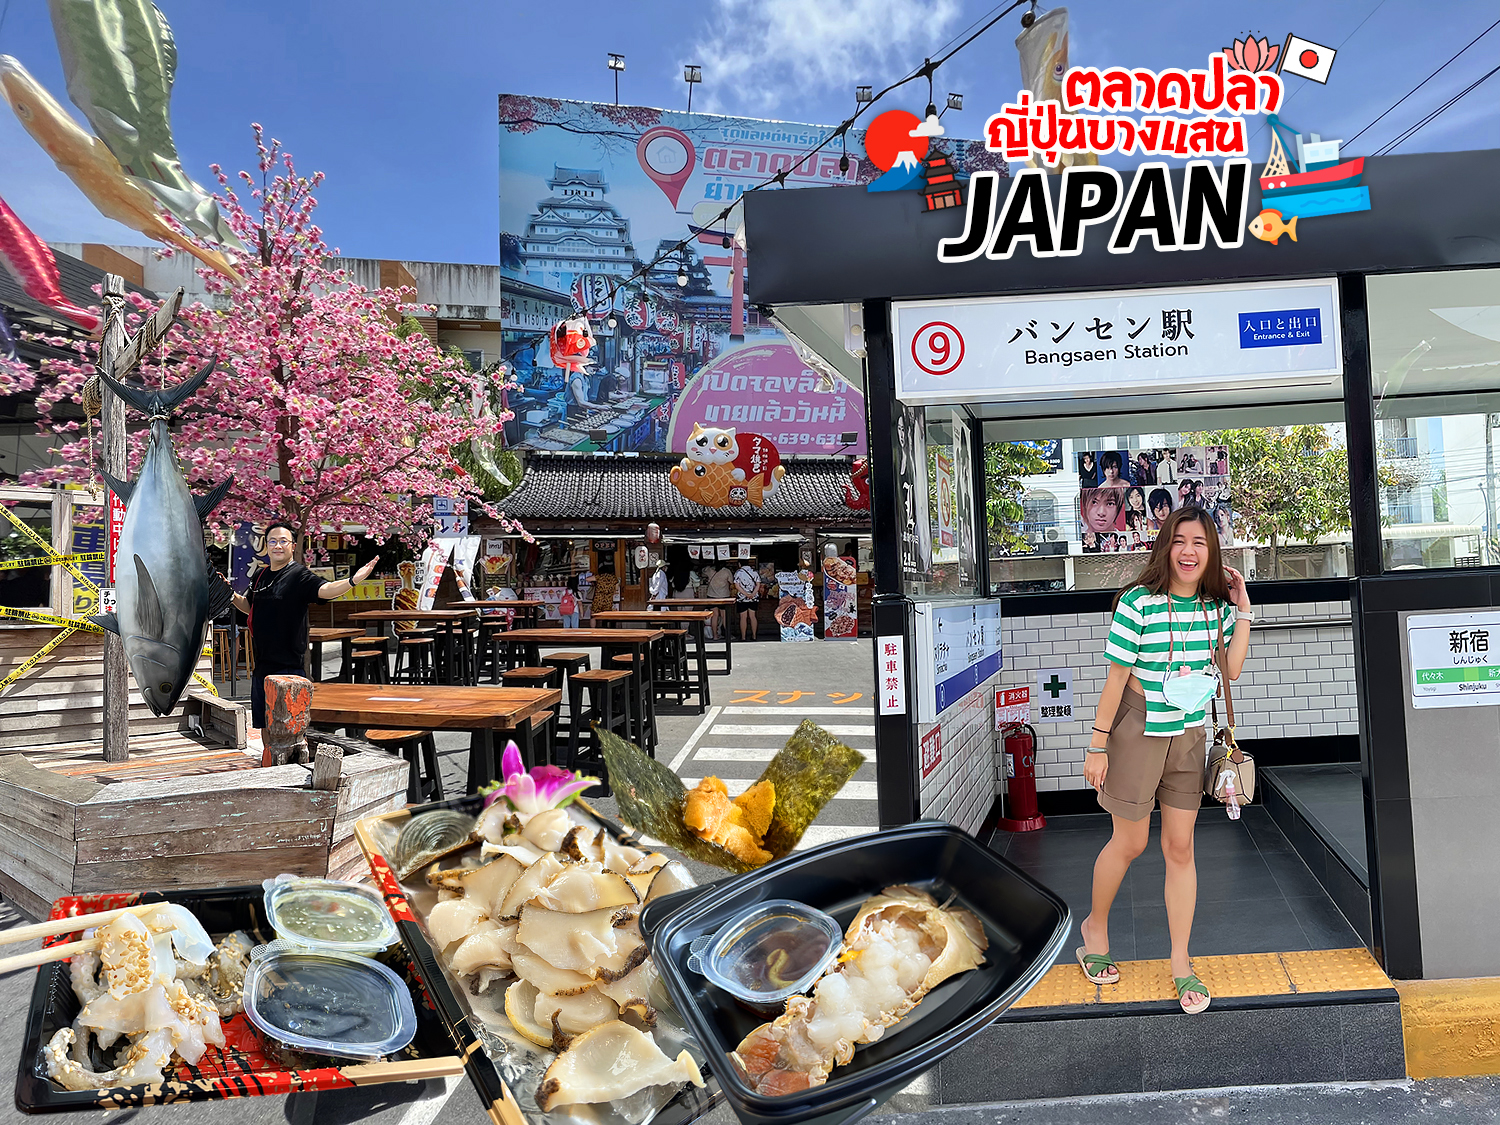 เที่ยวตลาดปลาญี่ปุ่น (บางแสน) กินซาชิมิทะเลไทย เป็นๆ สดๆ เนื้อหวาน ปลาหมึก หอย ปลา ไข่หอยเม่น มีครบ หายคิดถึงญี่ปุ่นได้นิดนึง